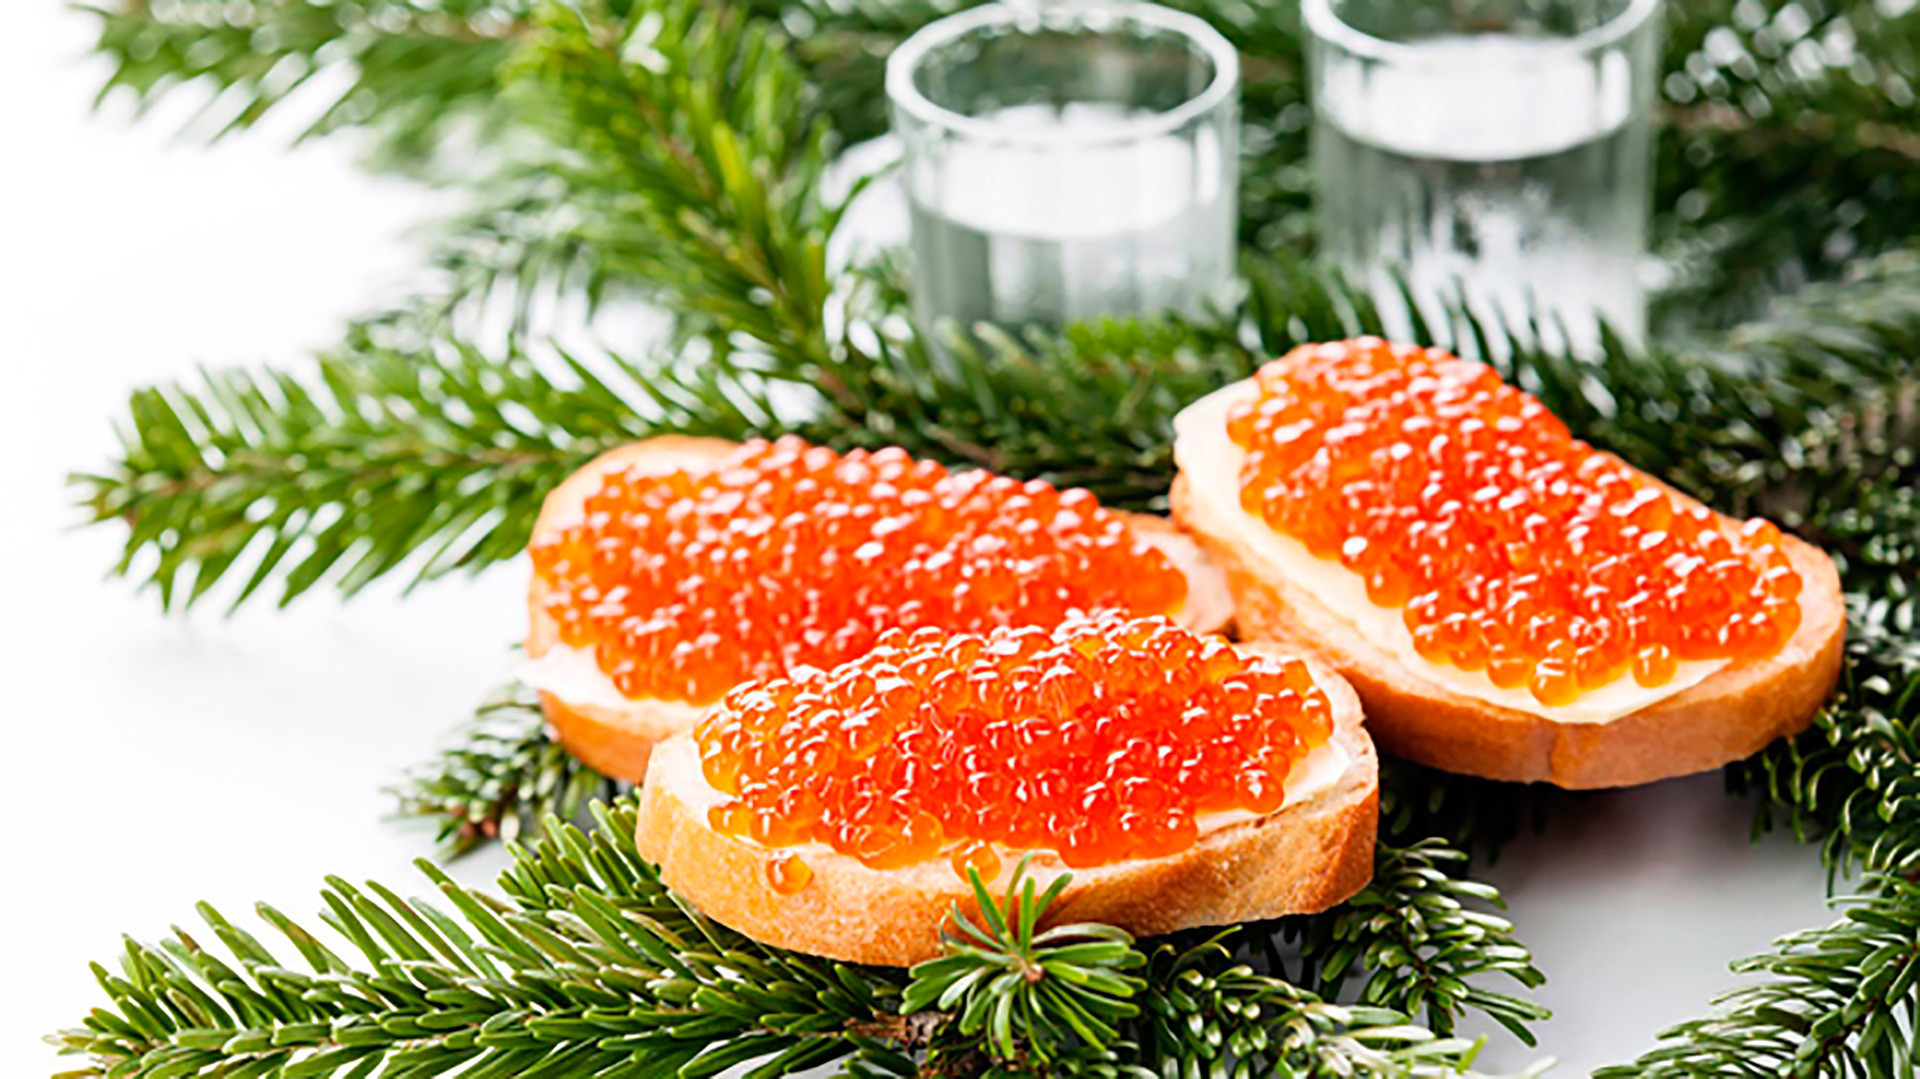 Бутерброды с красной икрой - неизменная закуска на новогоднем столе в России.